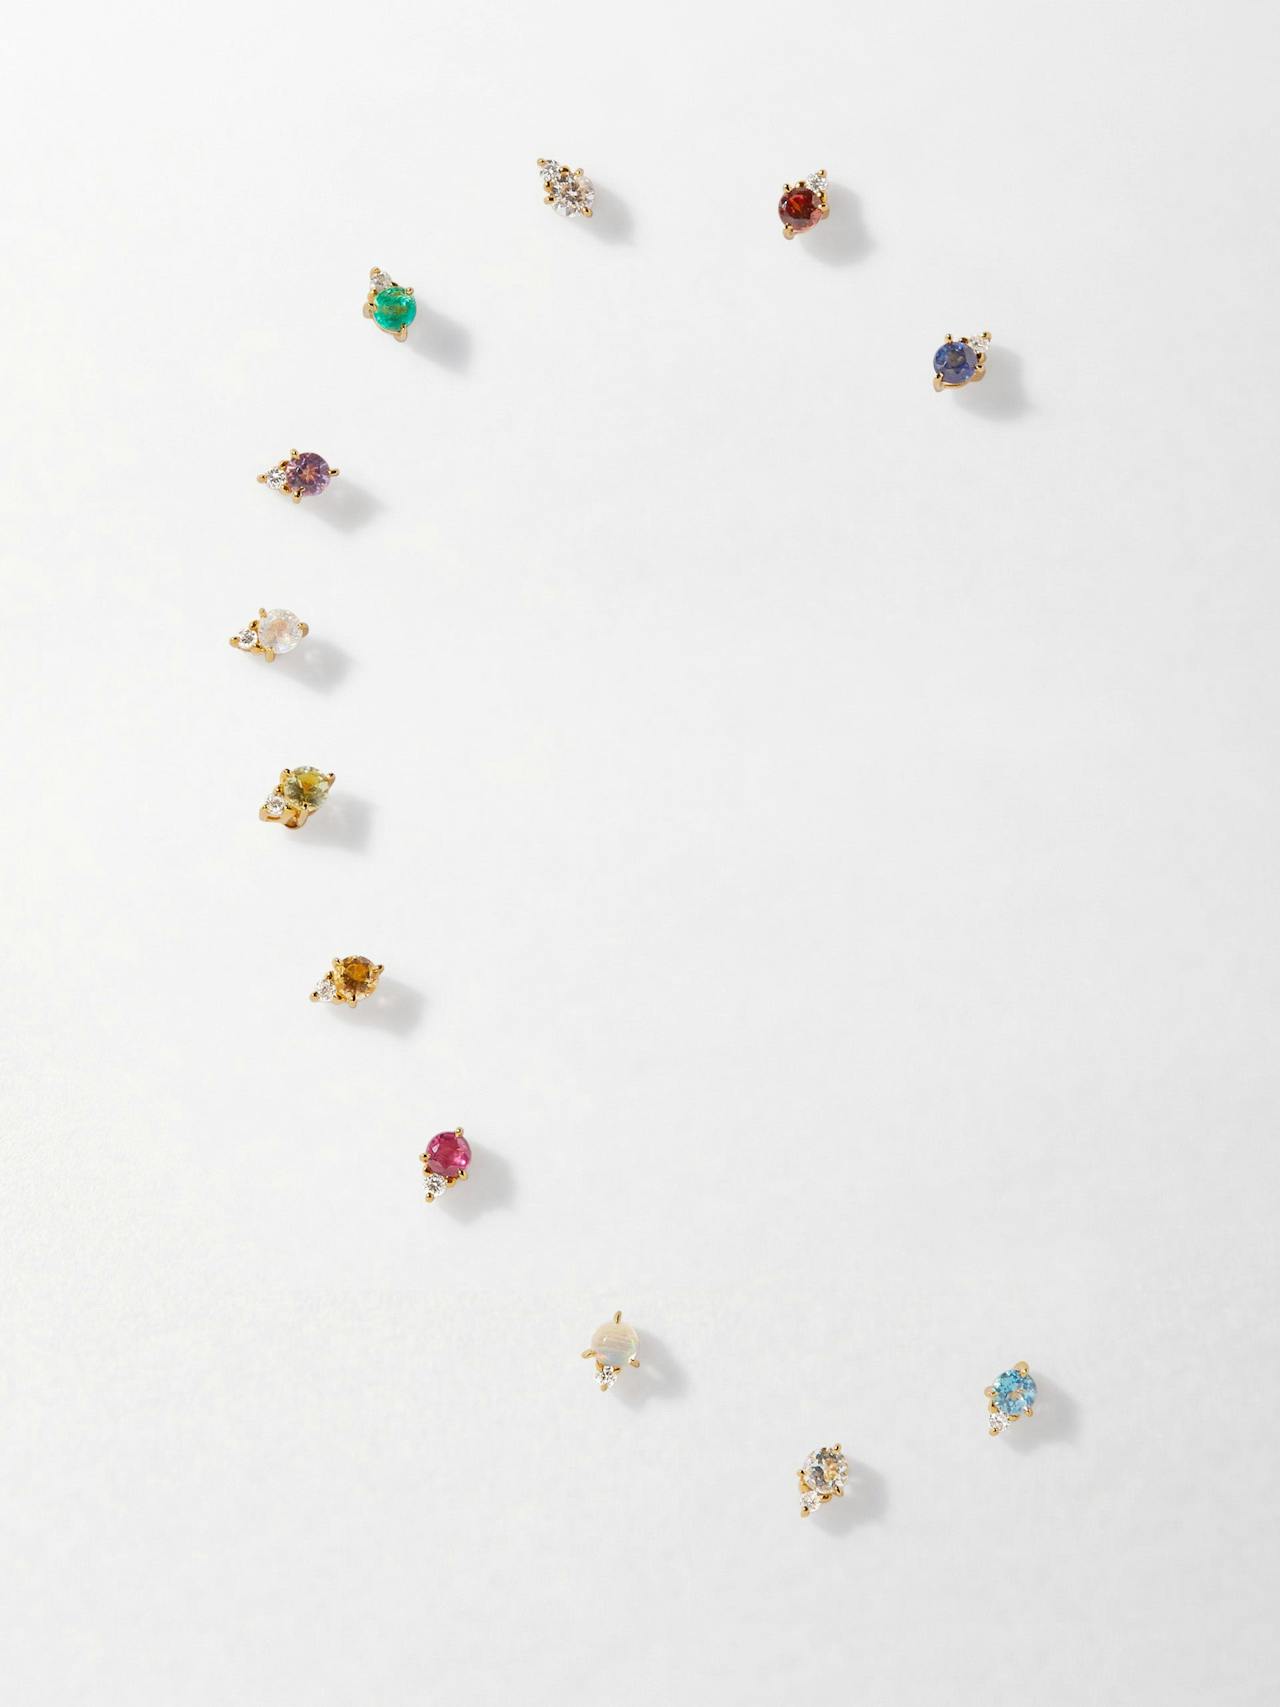 Birthstone diamond stud earrings